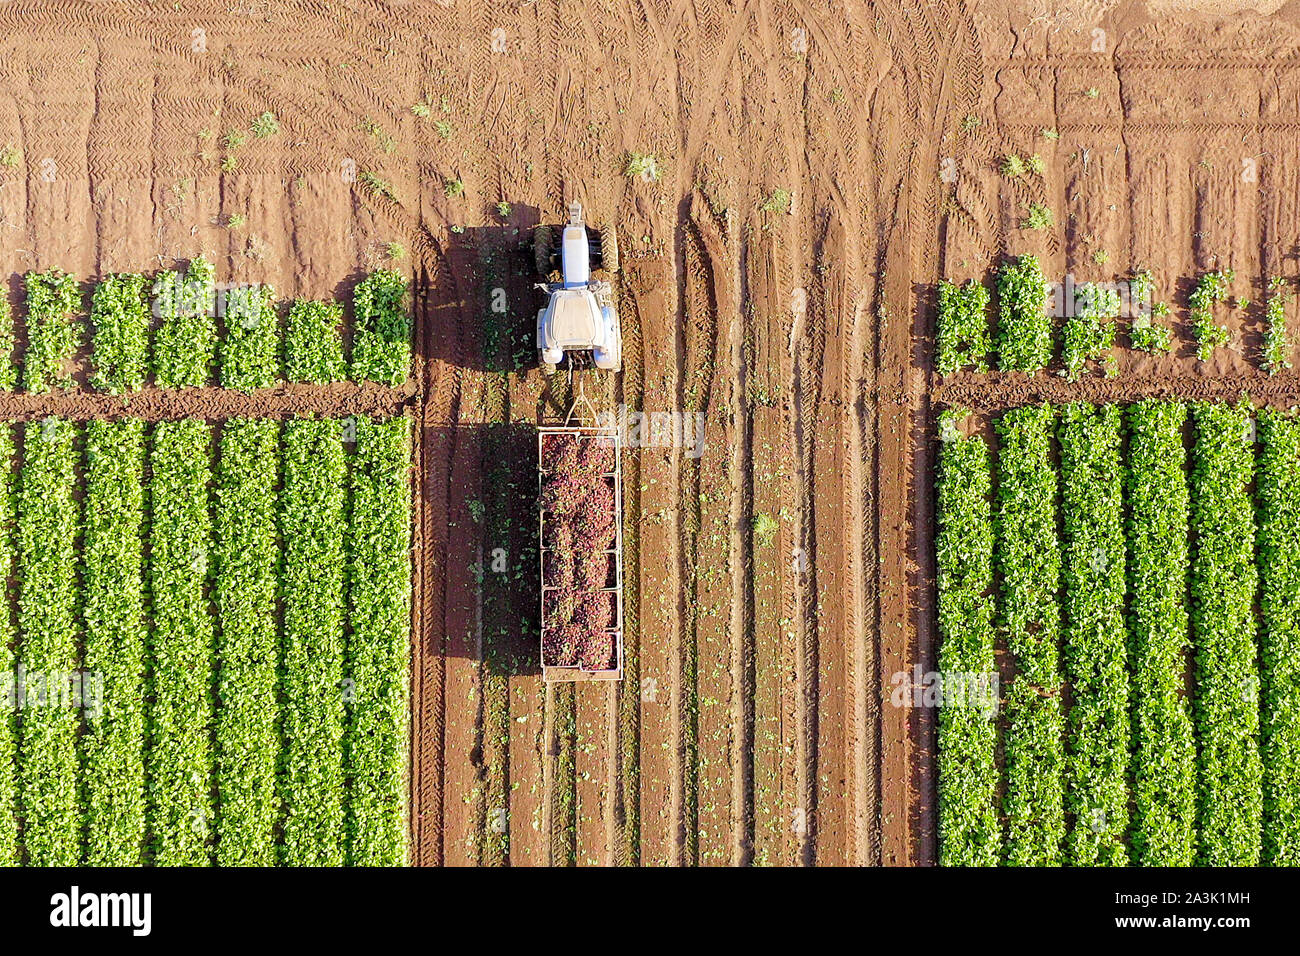 Trattore e rimorchio caricati con pallet di barbabietola fresca raccolta che attraversano un campo, immagine aerea. Foto Stock